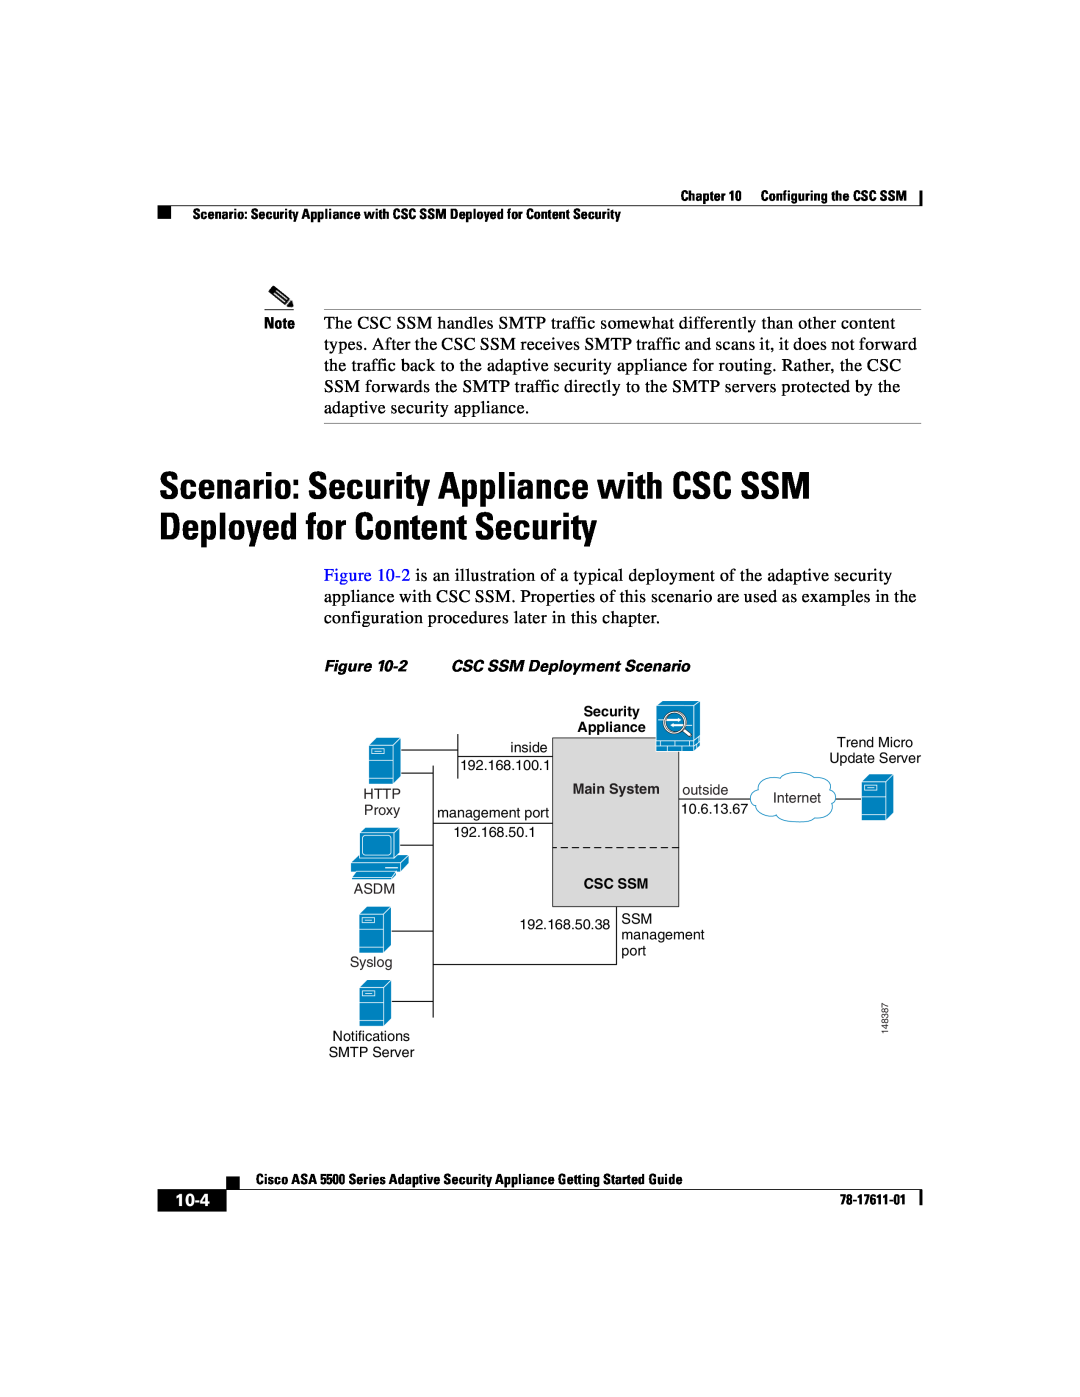 Cisco Systems ASA 5500 manual 10-4, 2CSC SSM Deployment Scenario, Configuring the CSC SSM, 78-17611-01 